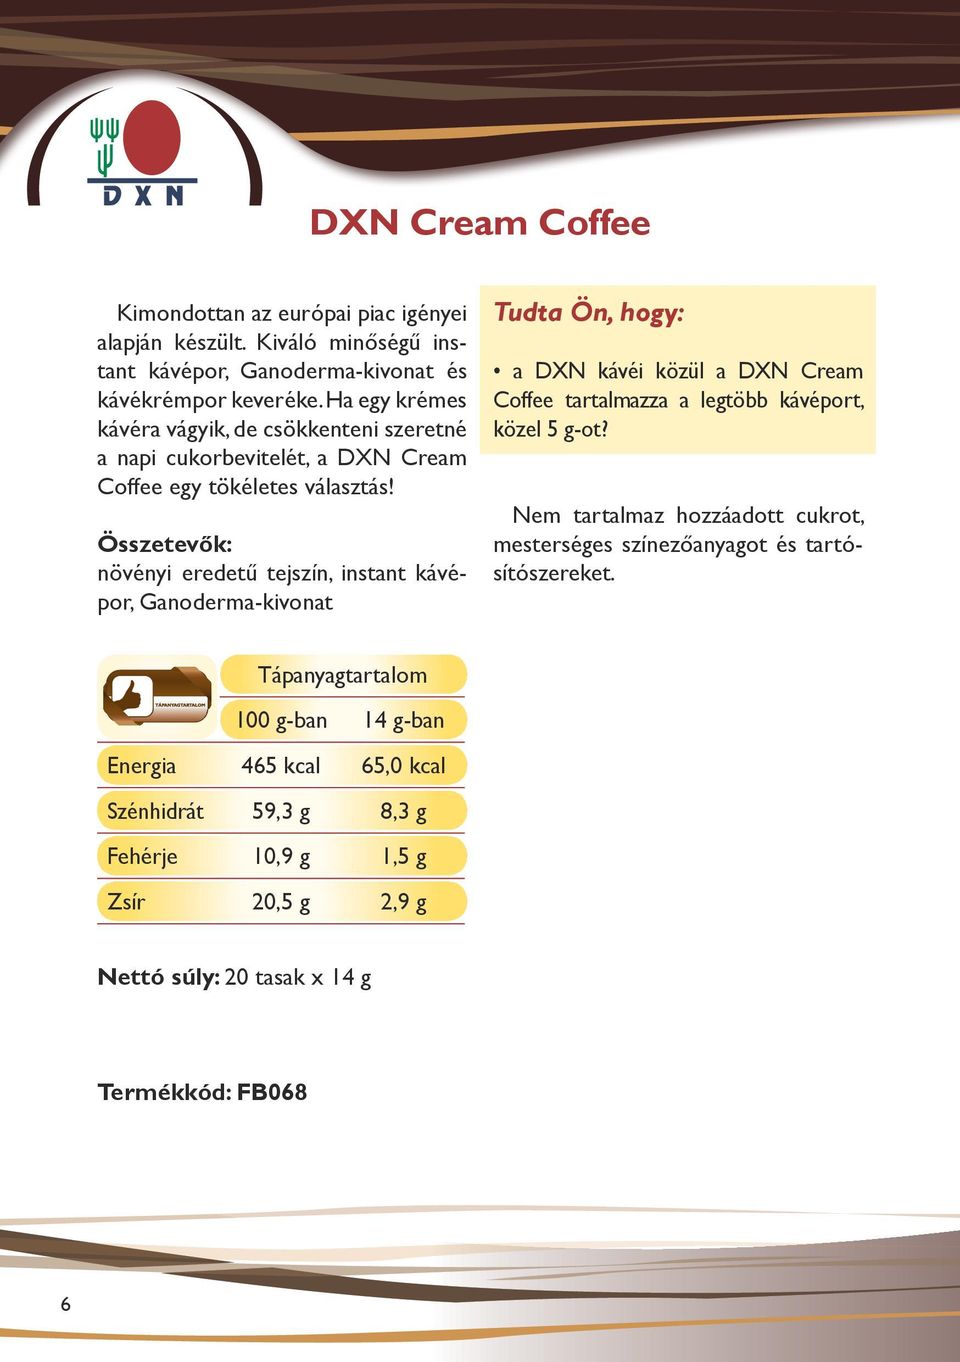 Összetevők: növényi eredetű tejszín, instant kávépor, Ganoderma-kivonat a DXN kávéi közül a DXN Cream Coffee tartalmazza a legtöbb kávéport, közel 5 g-ot?